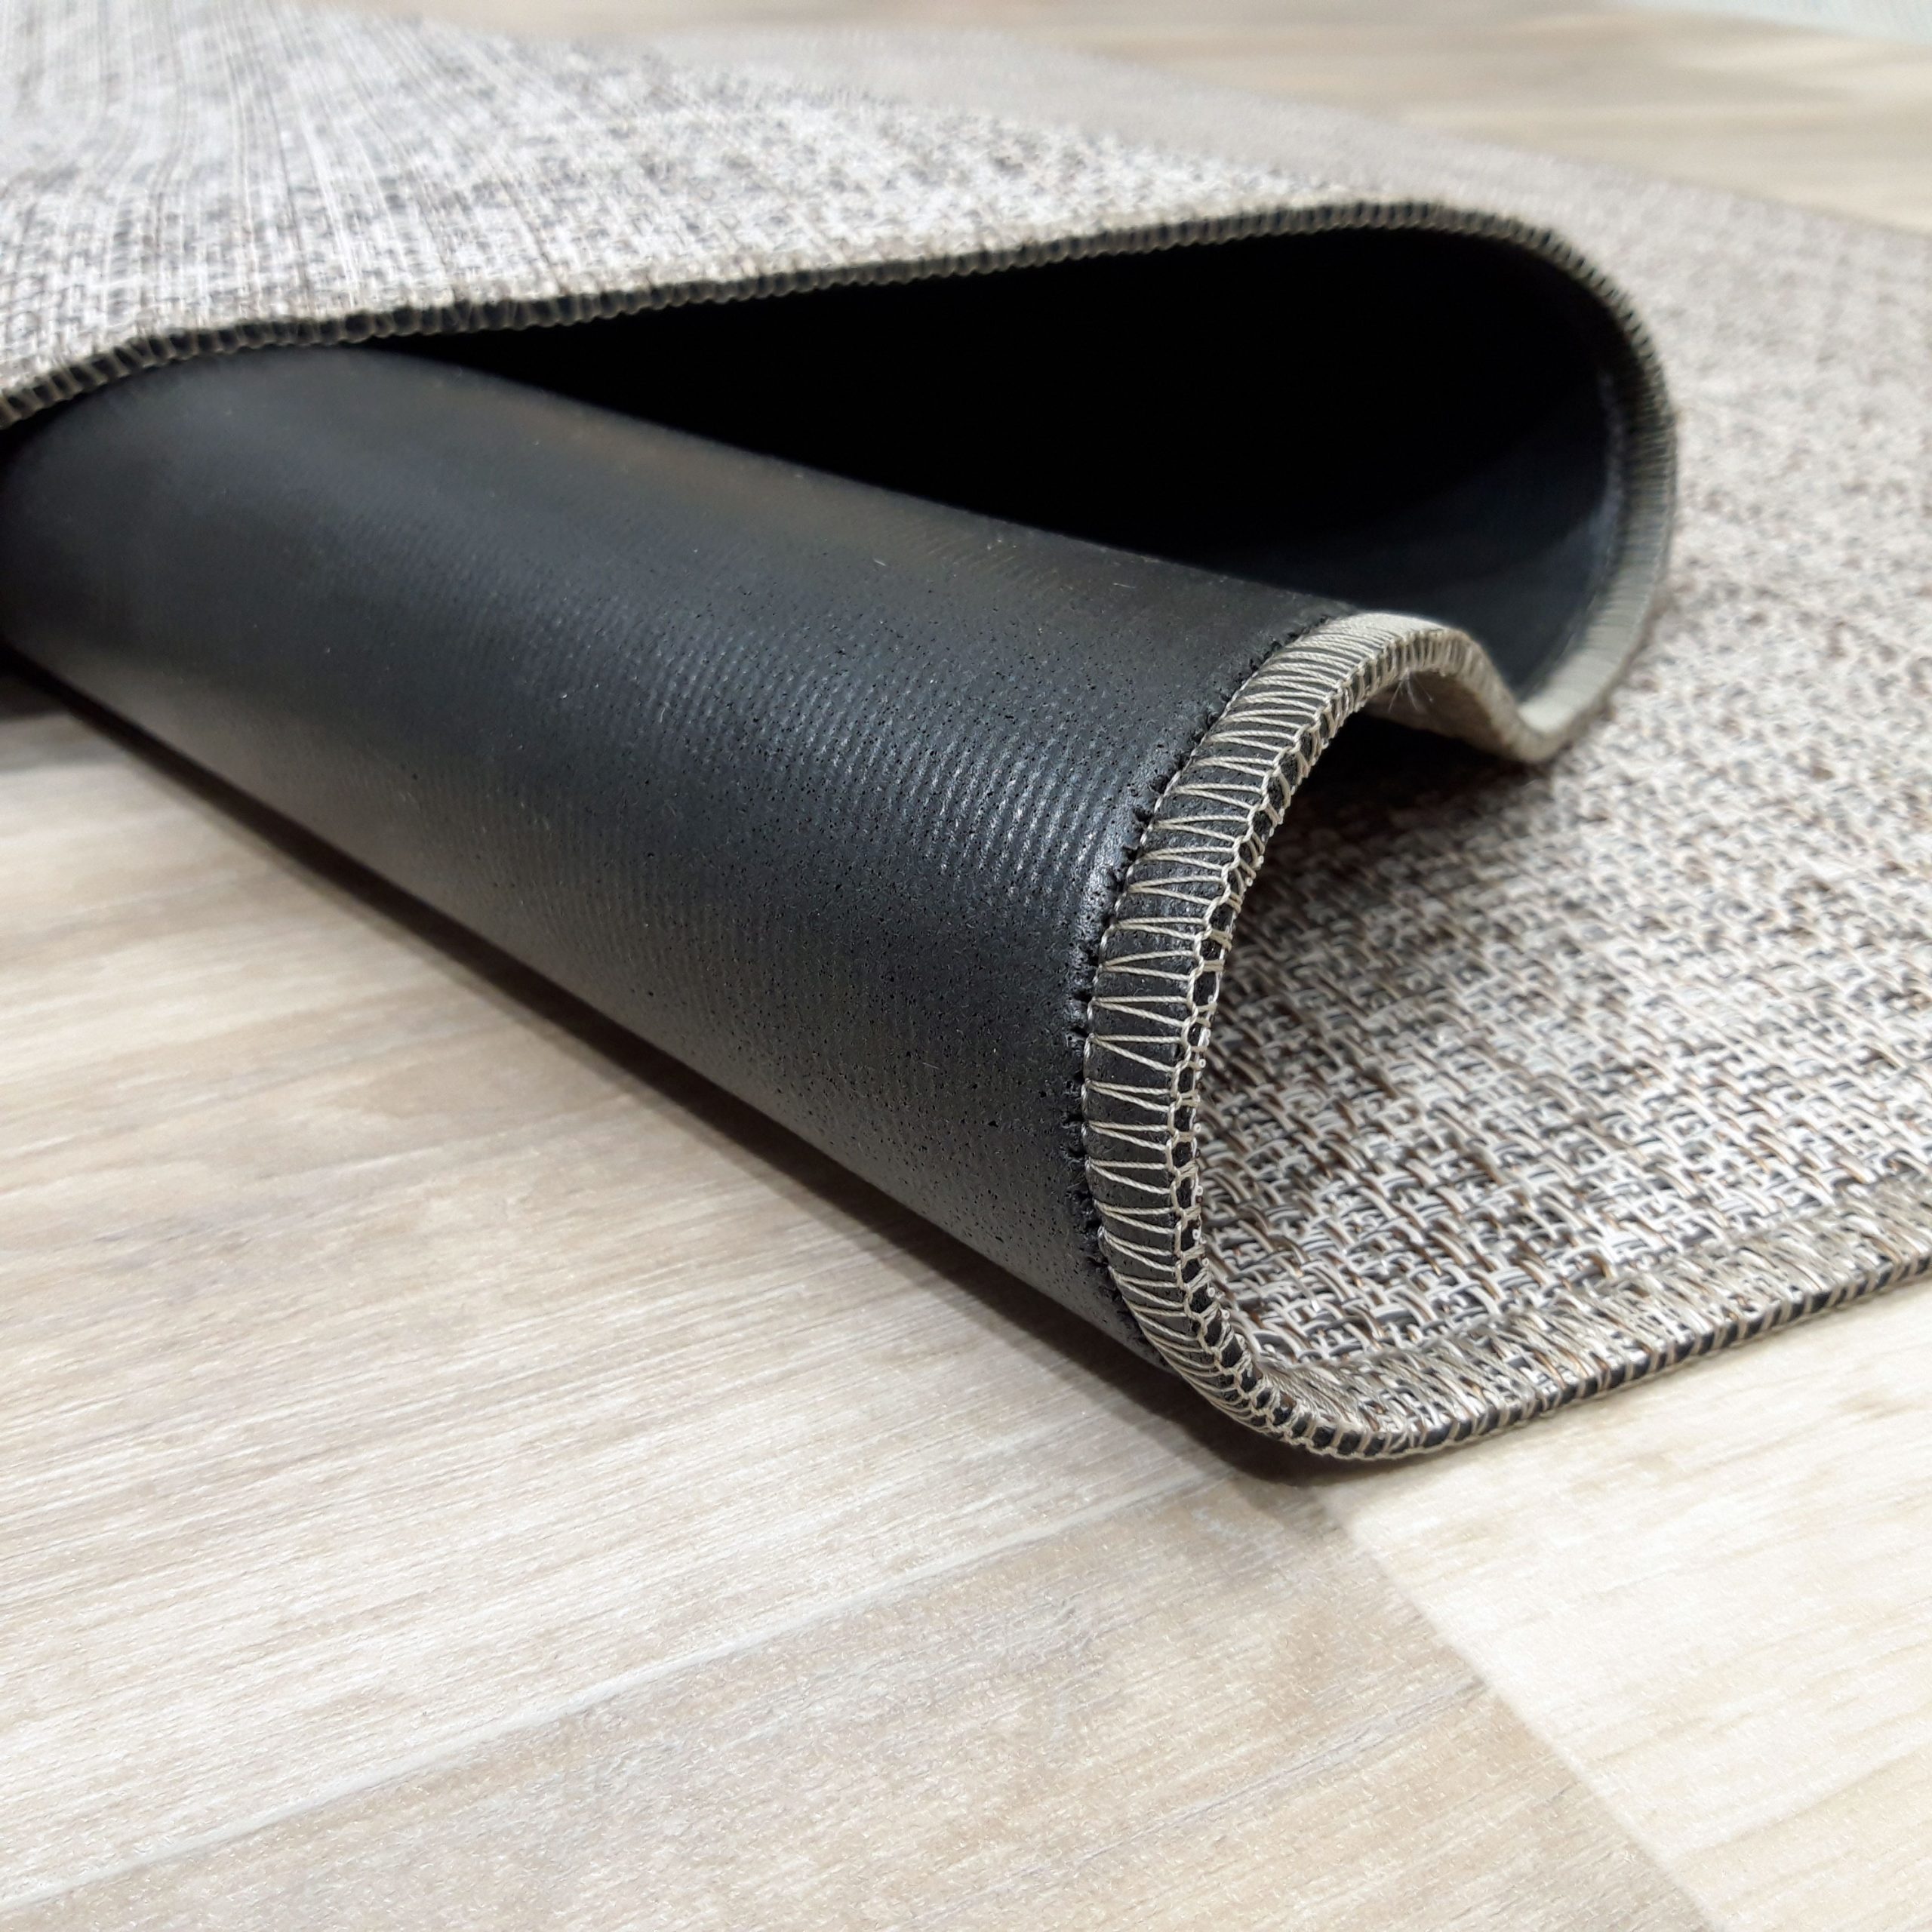 43 ideas de Alfombras Vinilicas  alfombras, alfombras de vinilo, vinilo